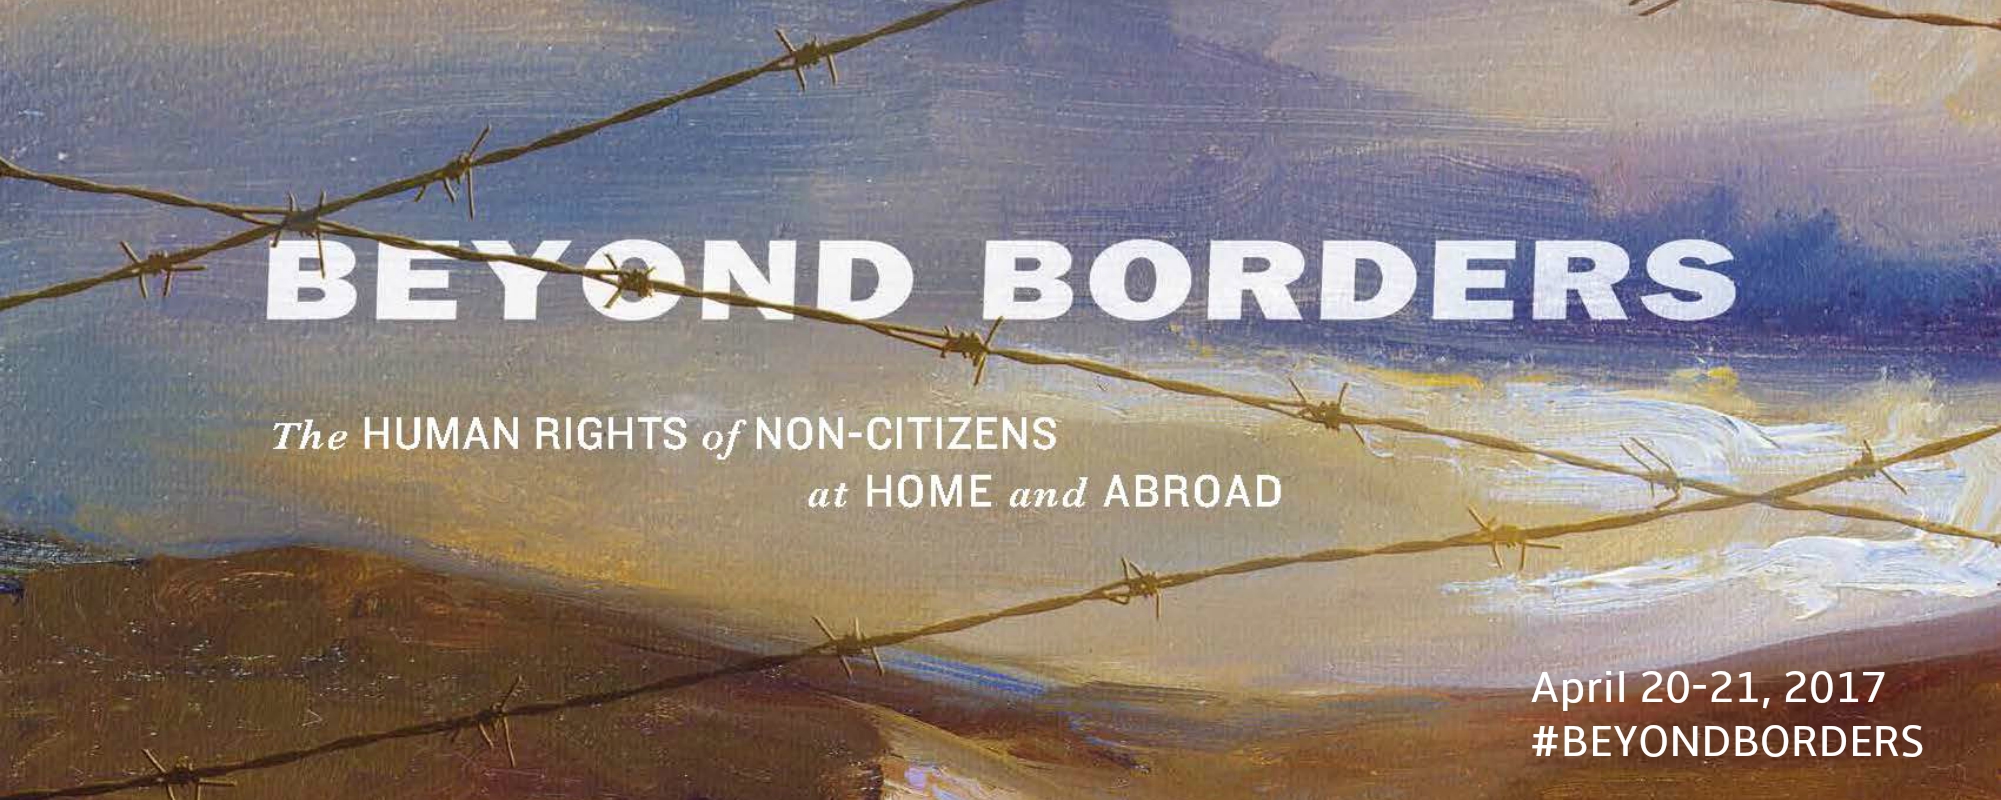 beyond borders banner